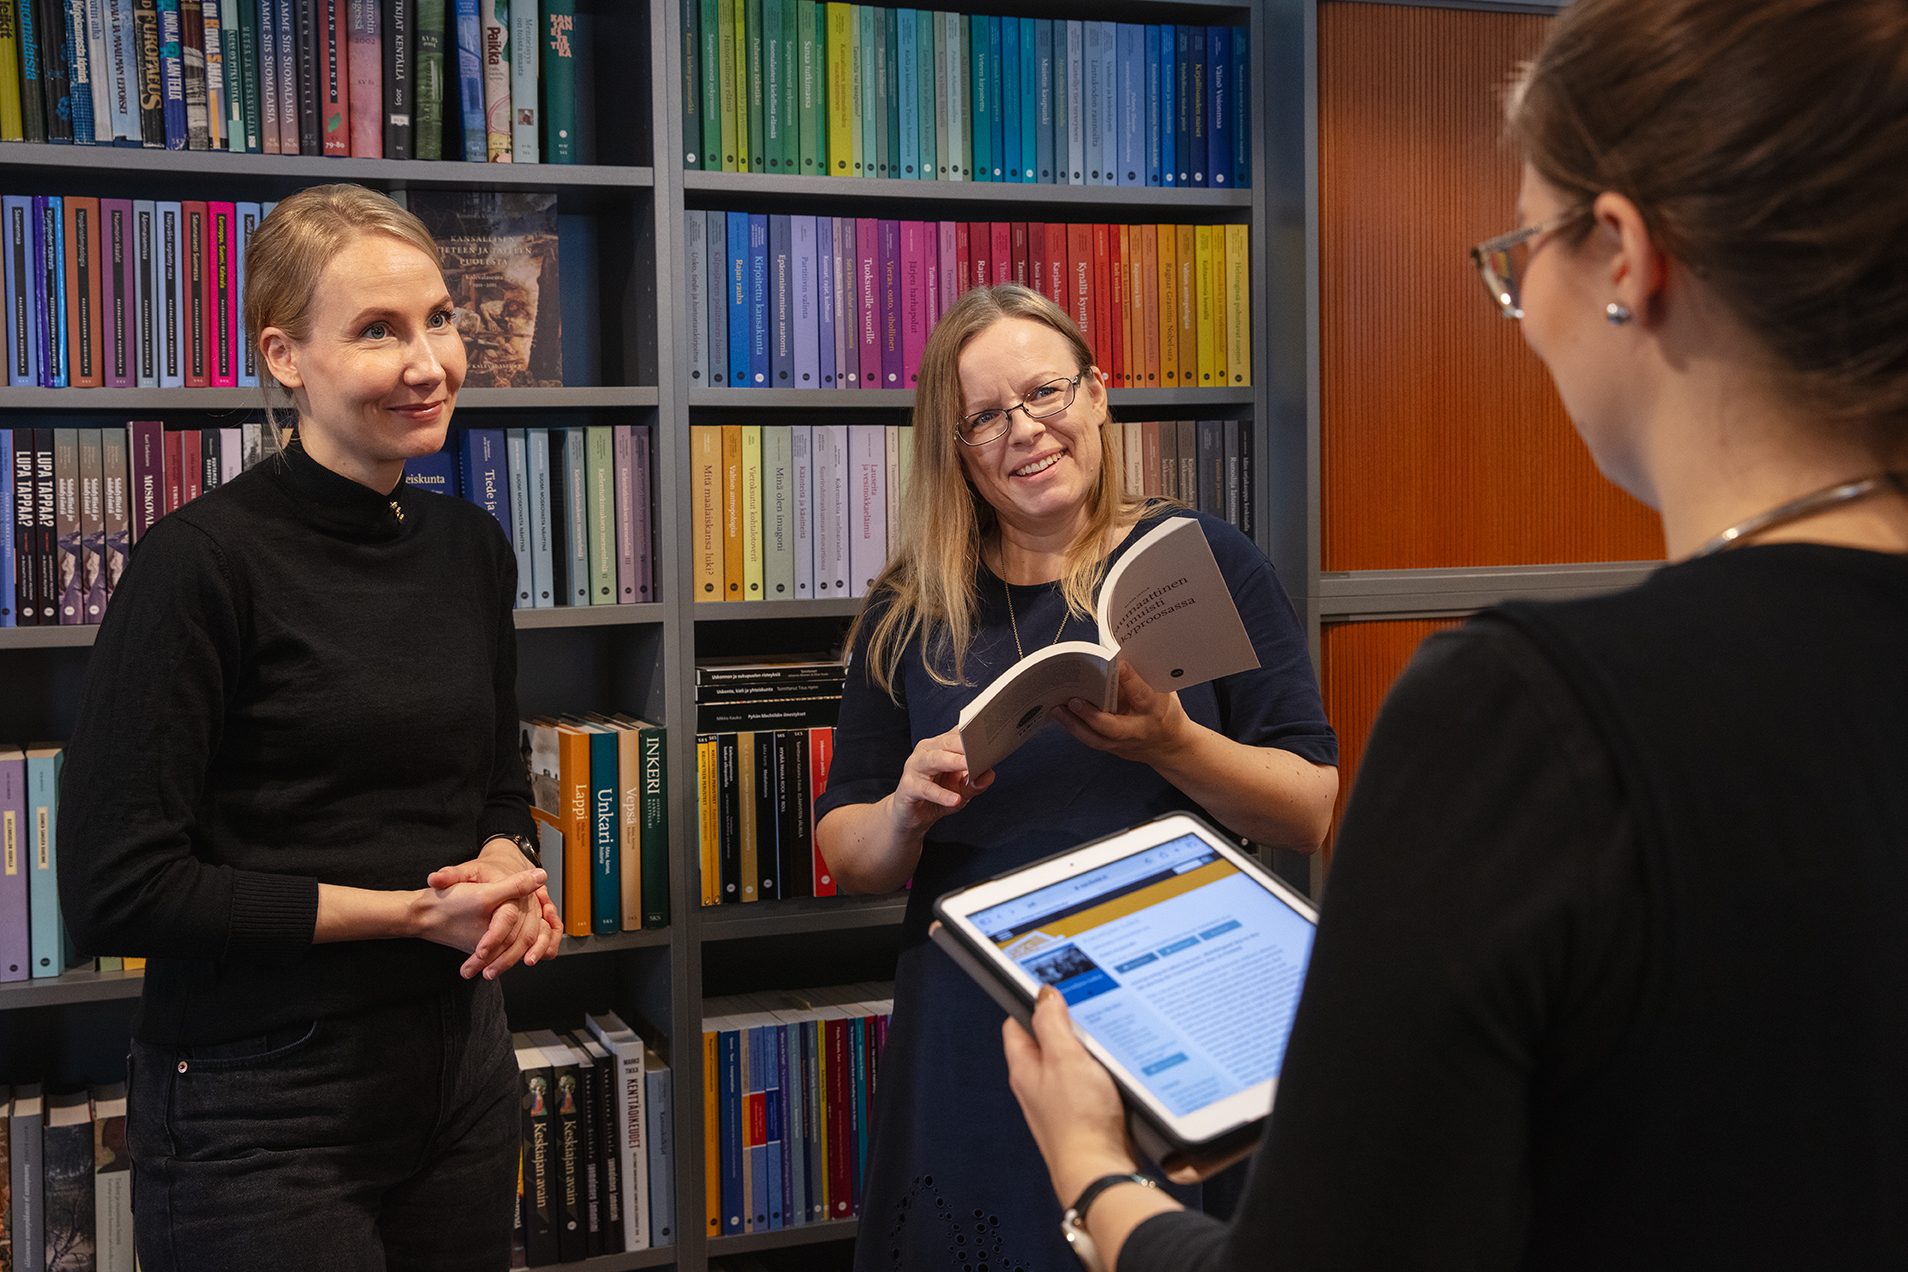 Kolme naista keskustelee kirjahyllyn edessä. Yhdellä on kädessään tabletti, jossa on auki SKS:n avoimien tiedekirjojen julkaisualusta.